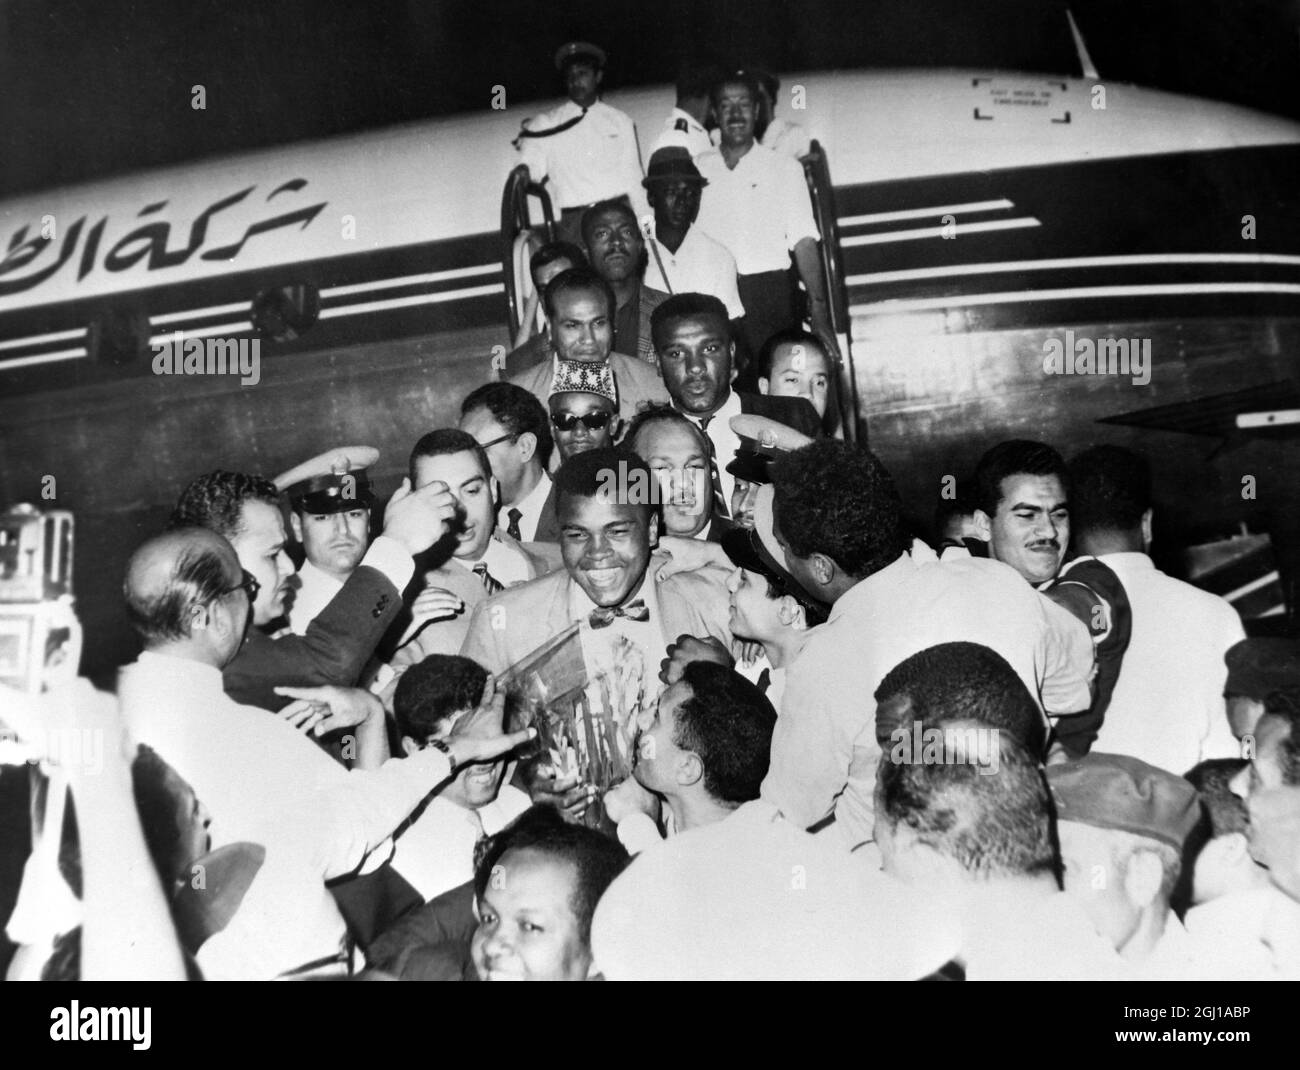 4 JUIN 1964 le champion mondial de poids lourd de boxe, Muhammad Ali, officiellement Cassius Clay entouré de foules après son arrivée à l'aéroport du Caire, en Égypte. Banque D'Images